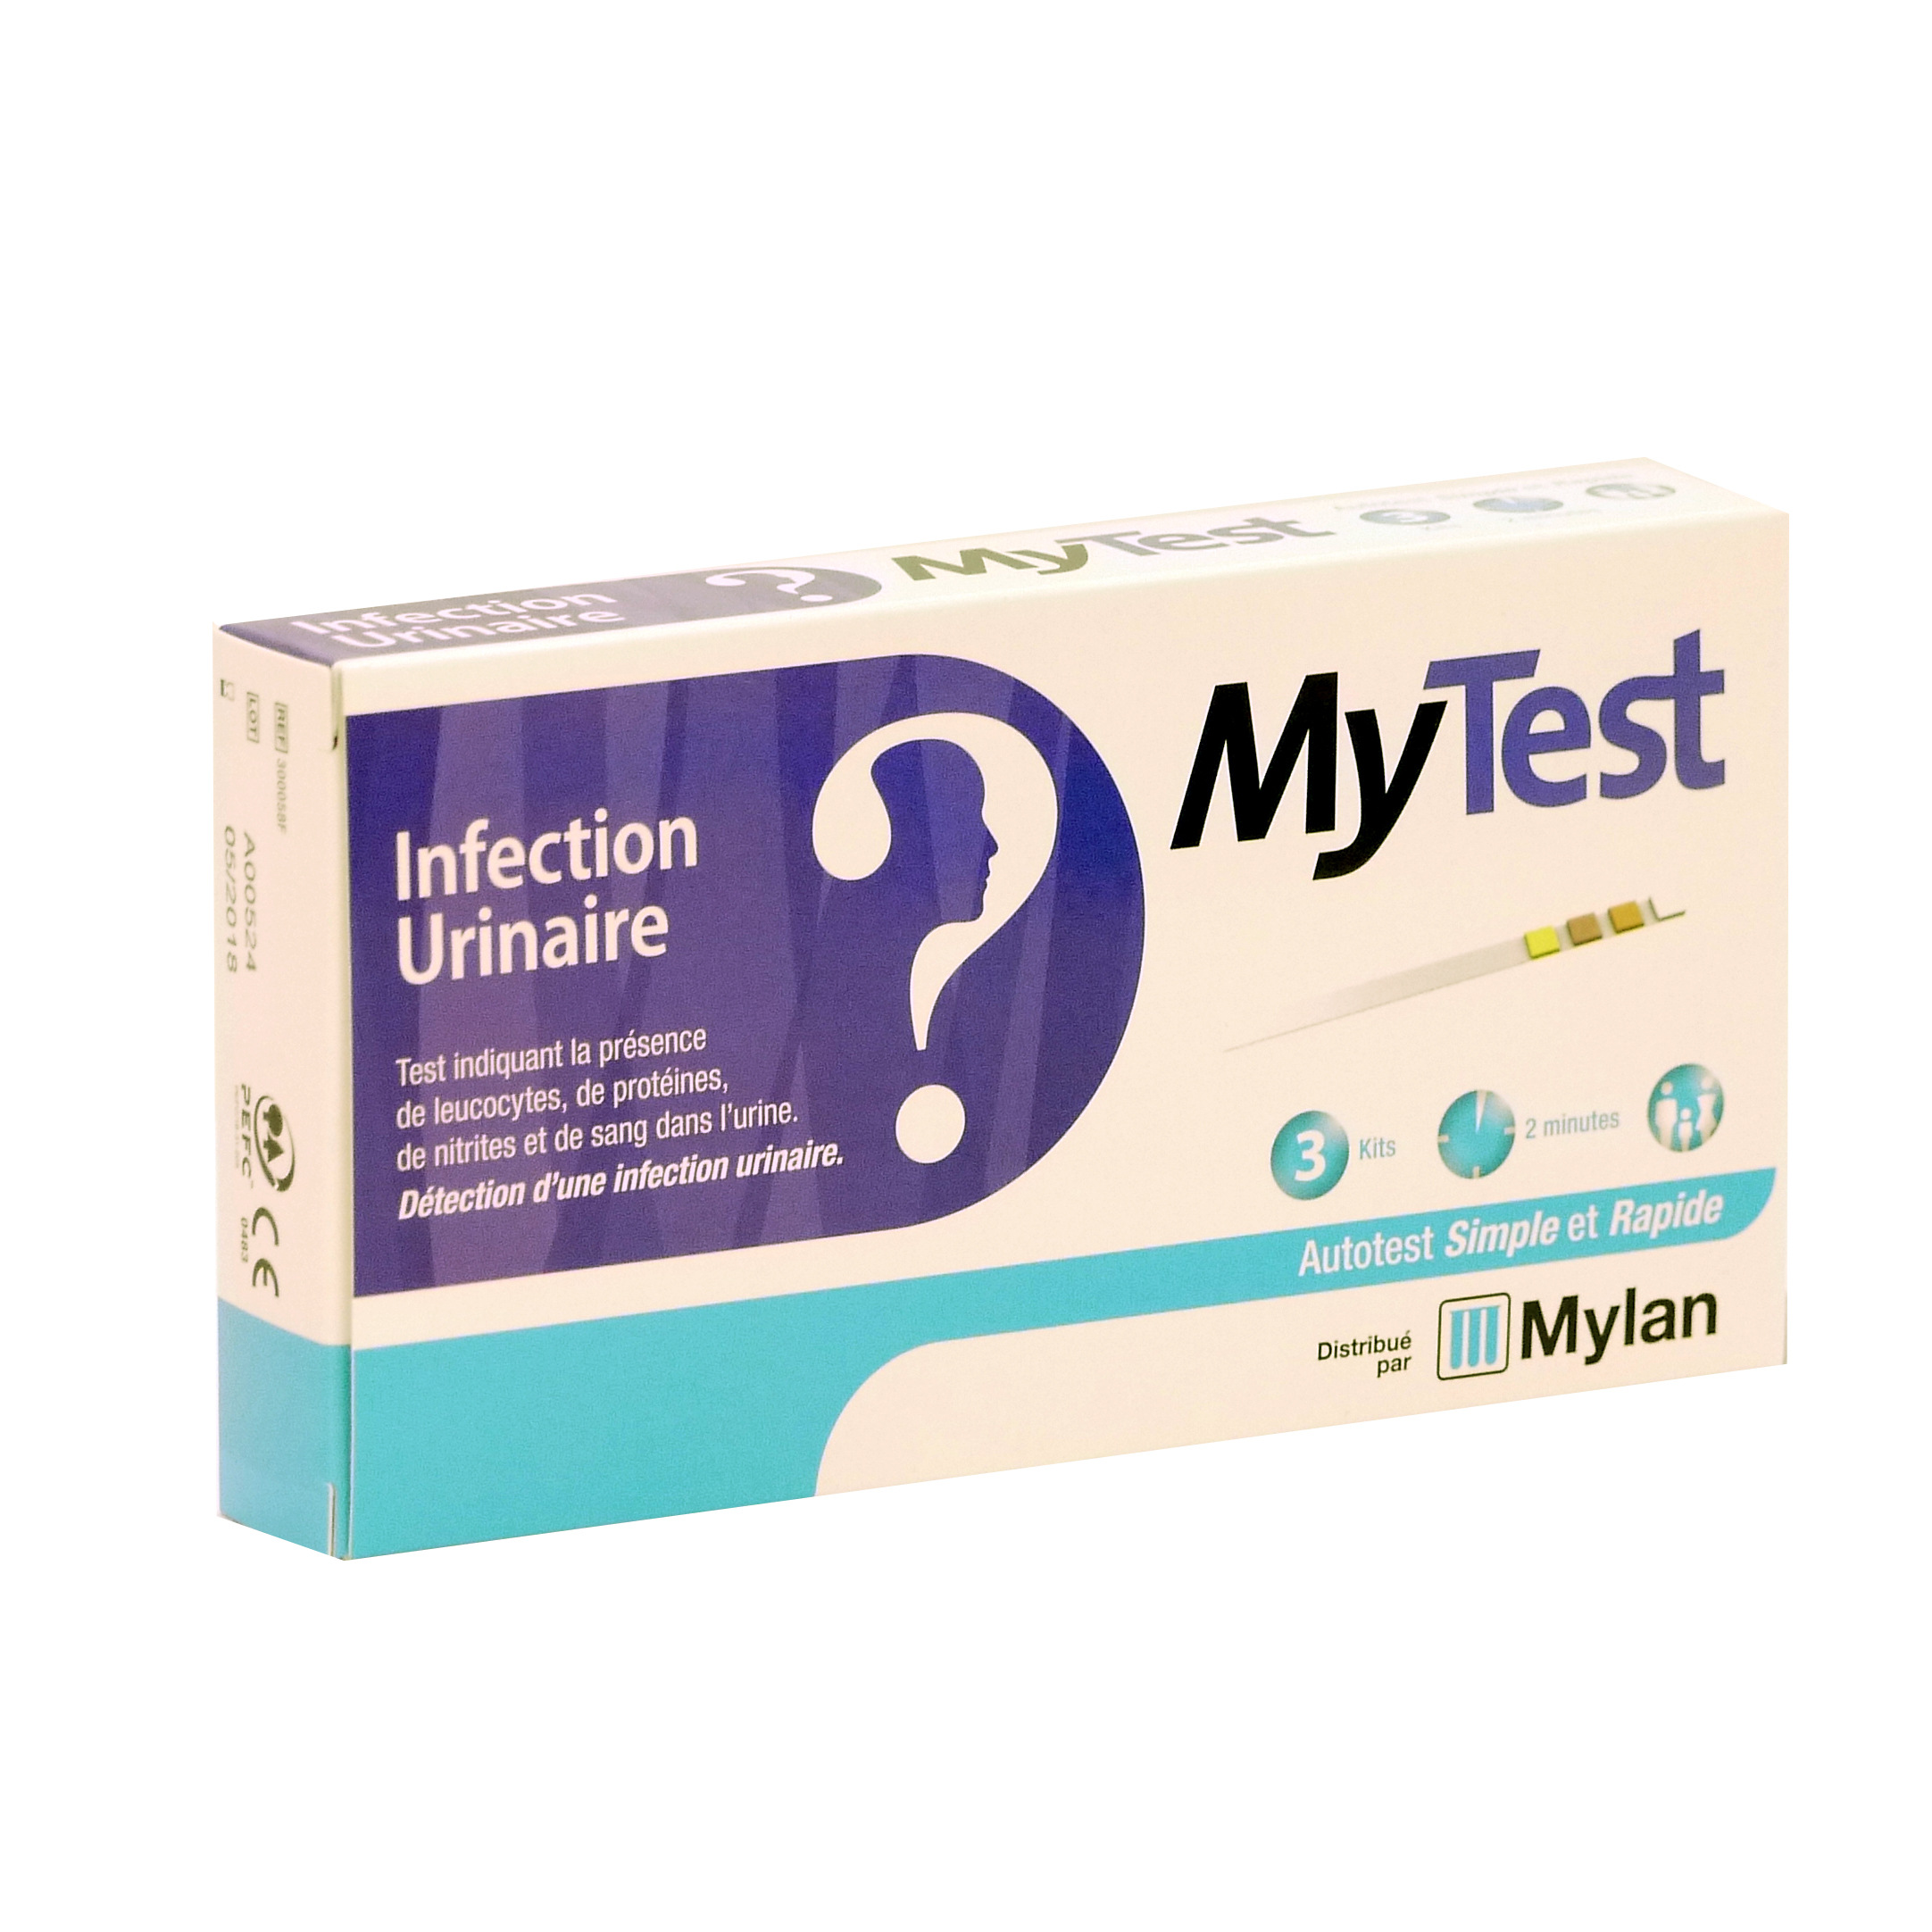 MyTest Infection Urinaire - Détection de la cystite